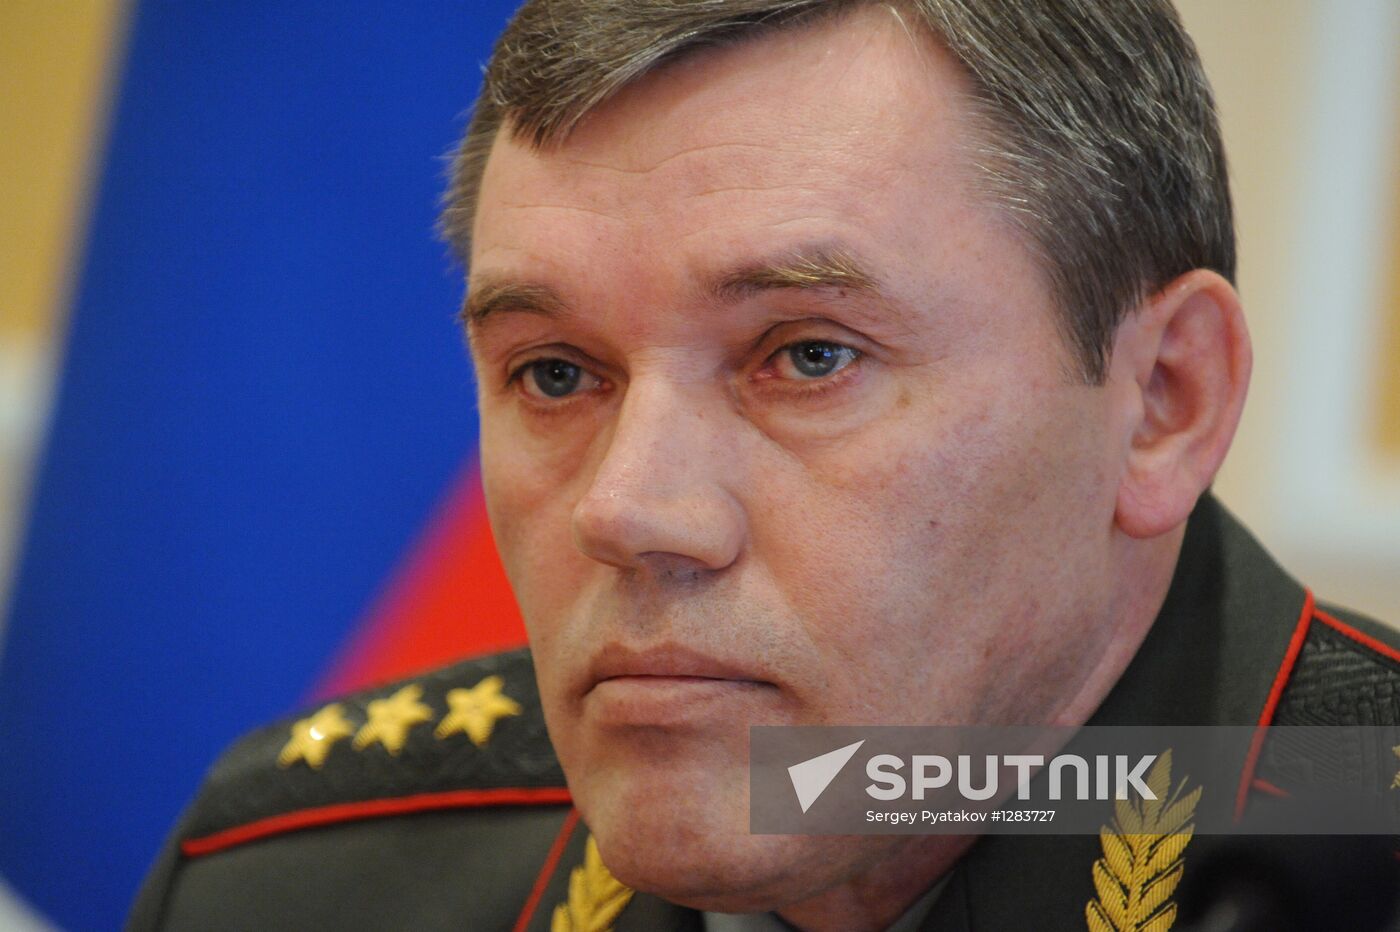 Colonel-General Valery Gerasimov